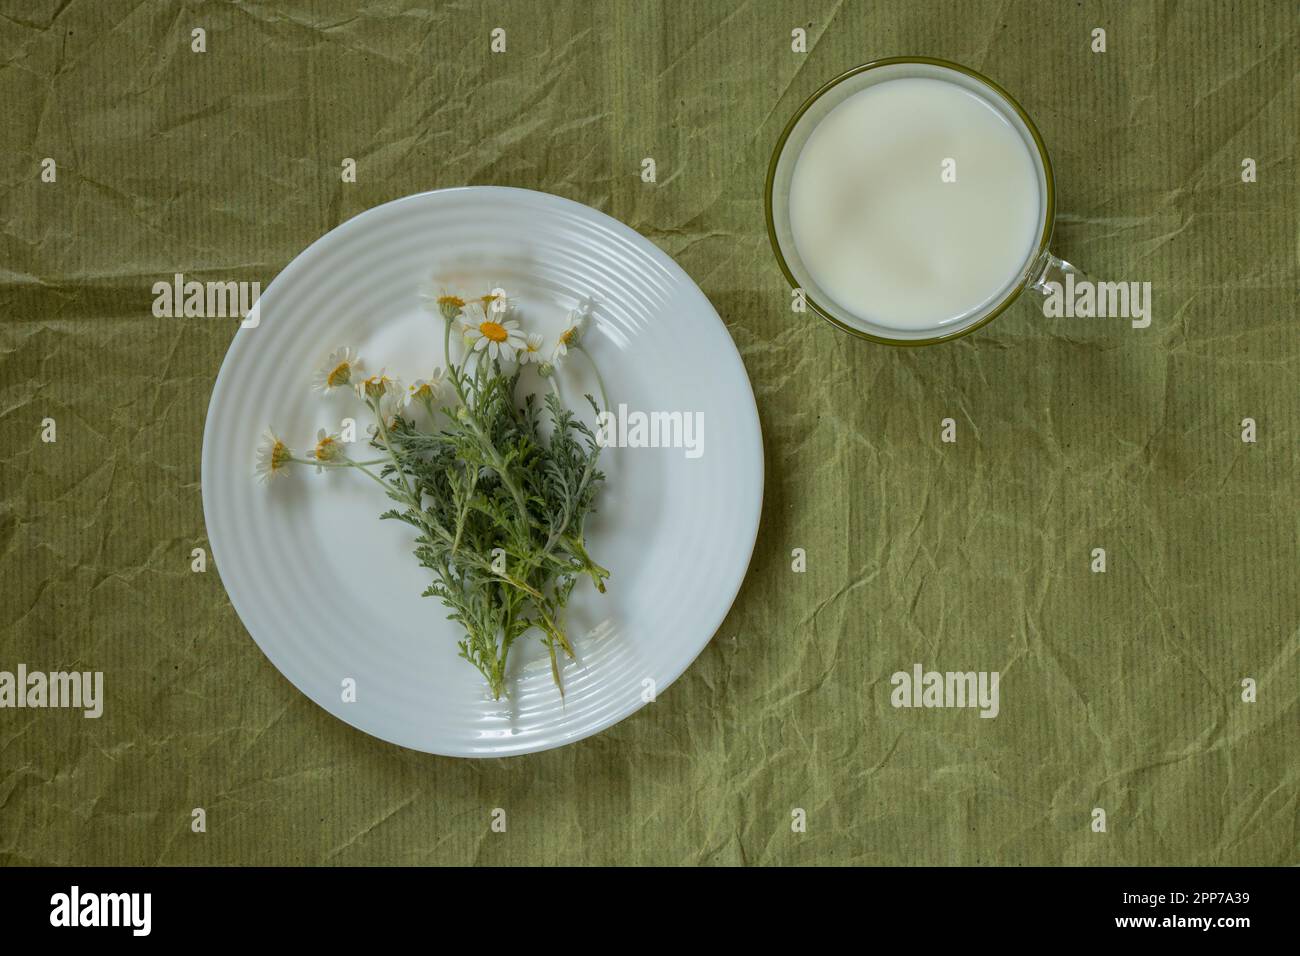 tasse de lait et fleur de camomille sur une assiette sur un vert Banque D'Images